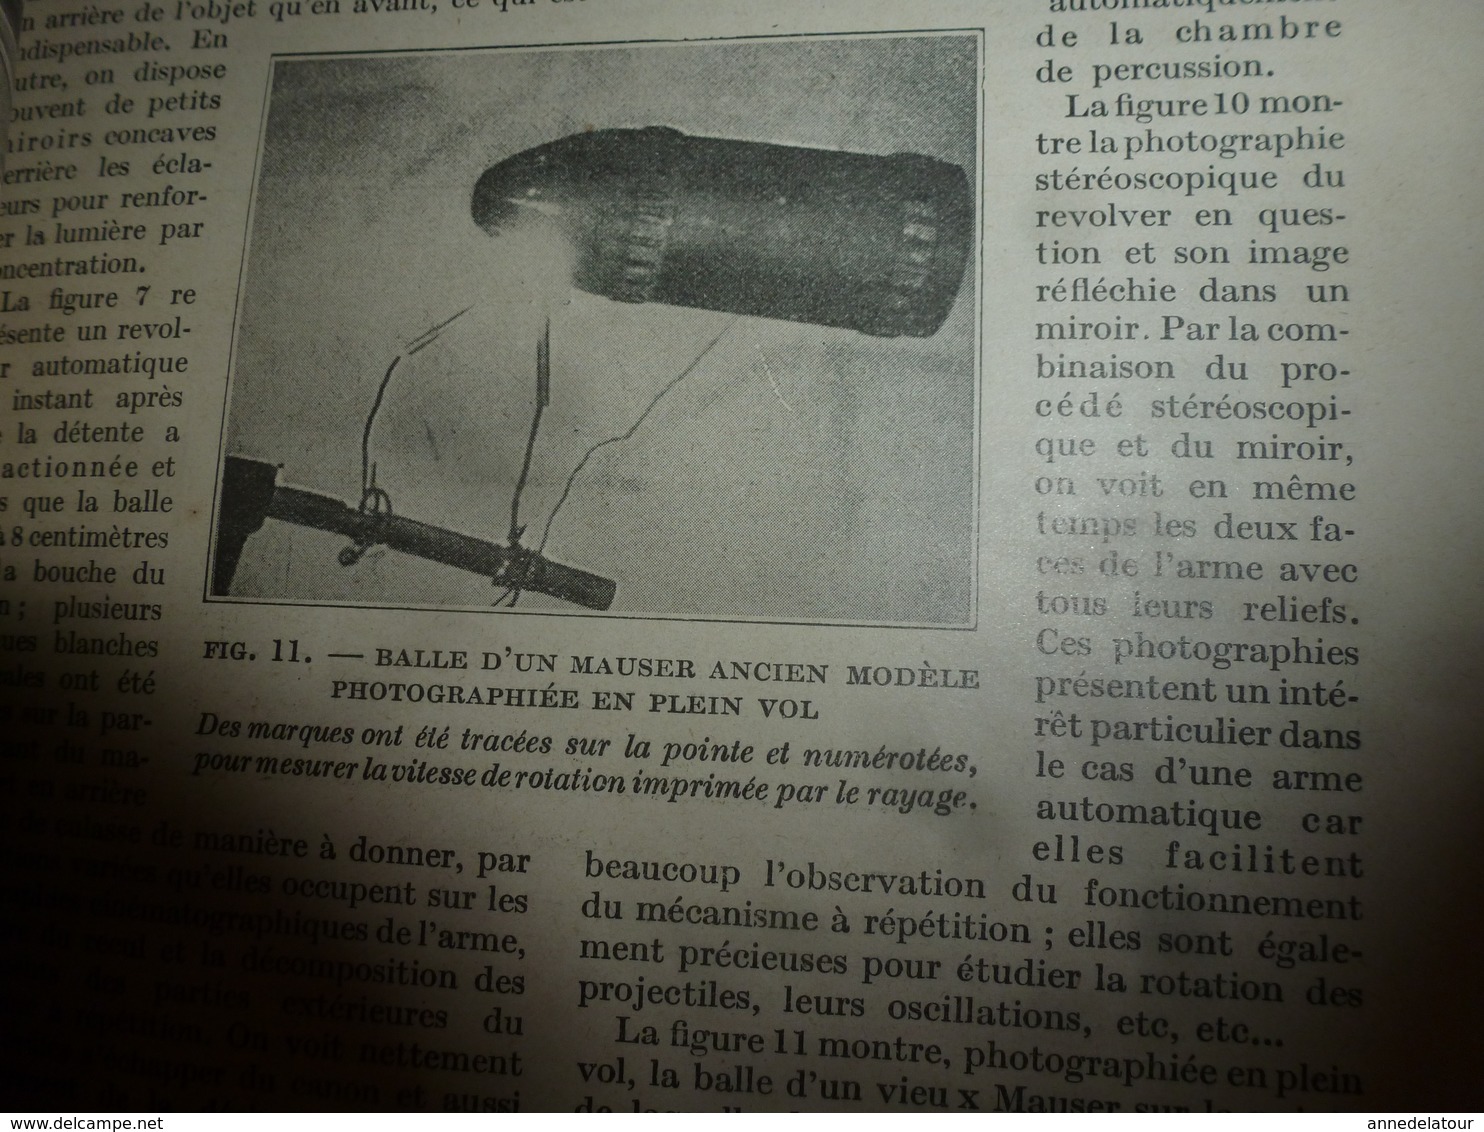 1917 LSELV : Un moyen de photographier les projectiles en plein vol, par André Crober (ingénieur)